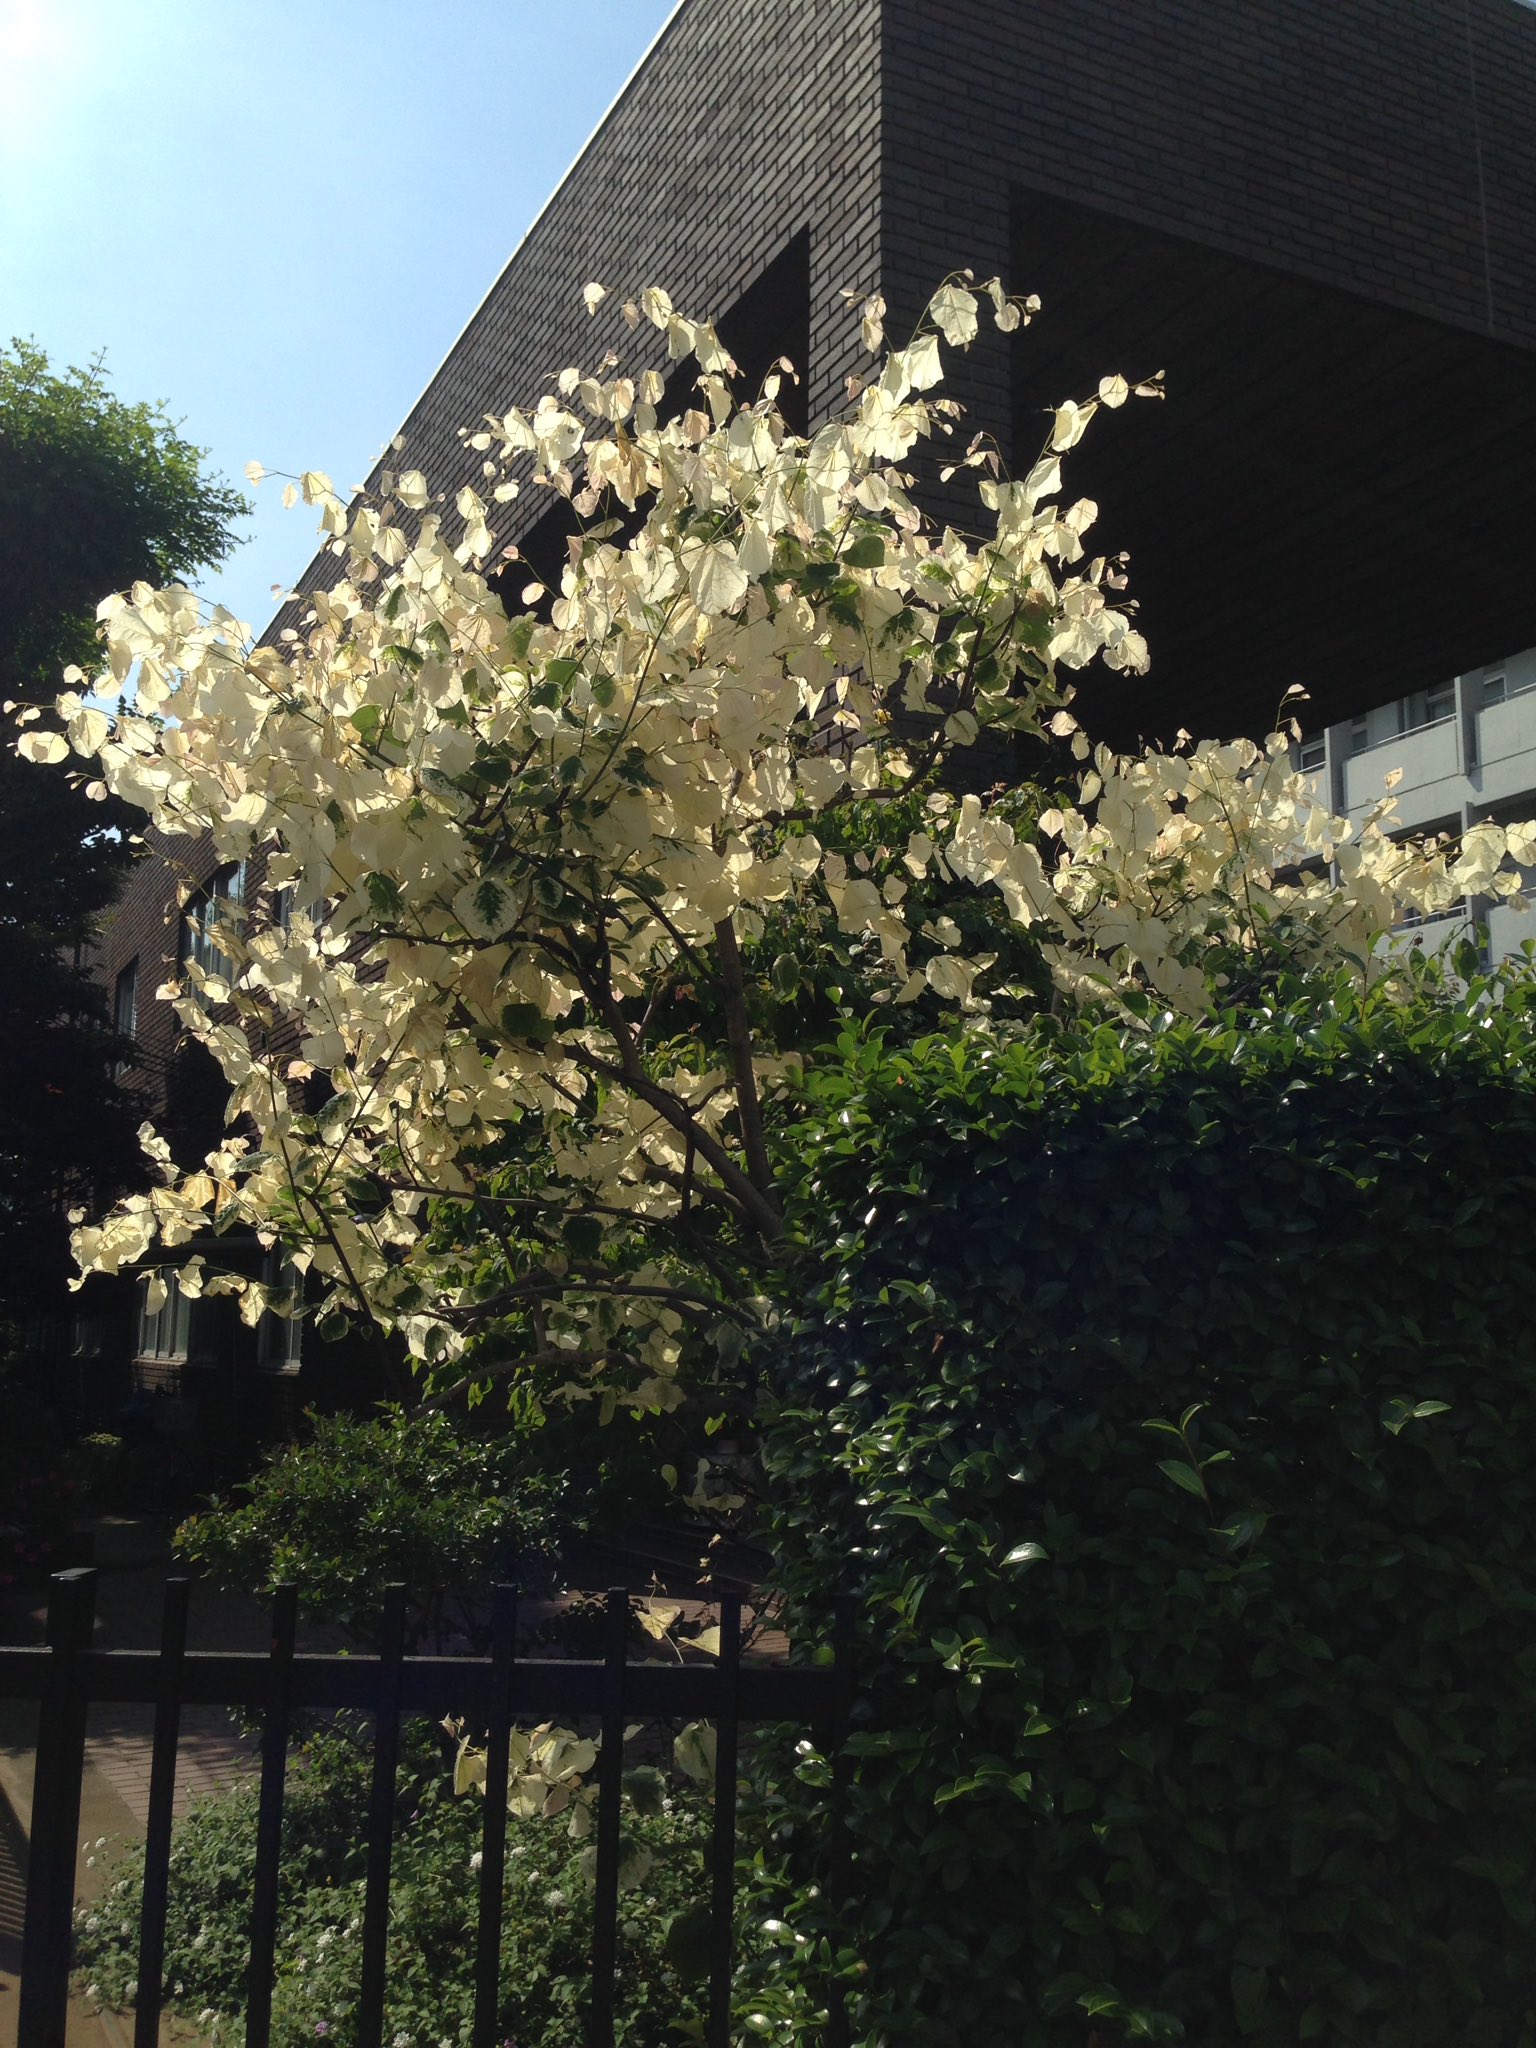 ヤマボウシ３ 白い葉っぱの木に遭遇しました 遠くから見ると花が咲いたようです ネットで検索しましたが今ひとつ名前が分かりません 夏になったら緑になるのでしょうか 白い葉 T Co Auycsulbhr Twitter